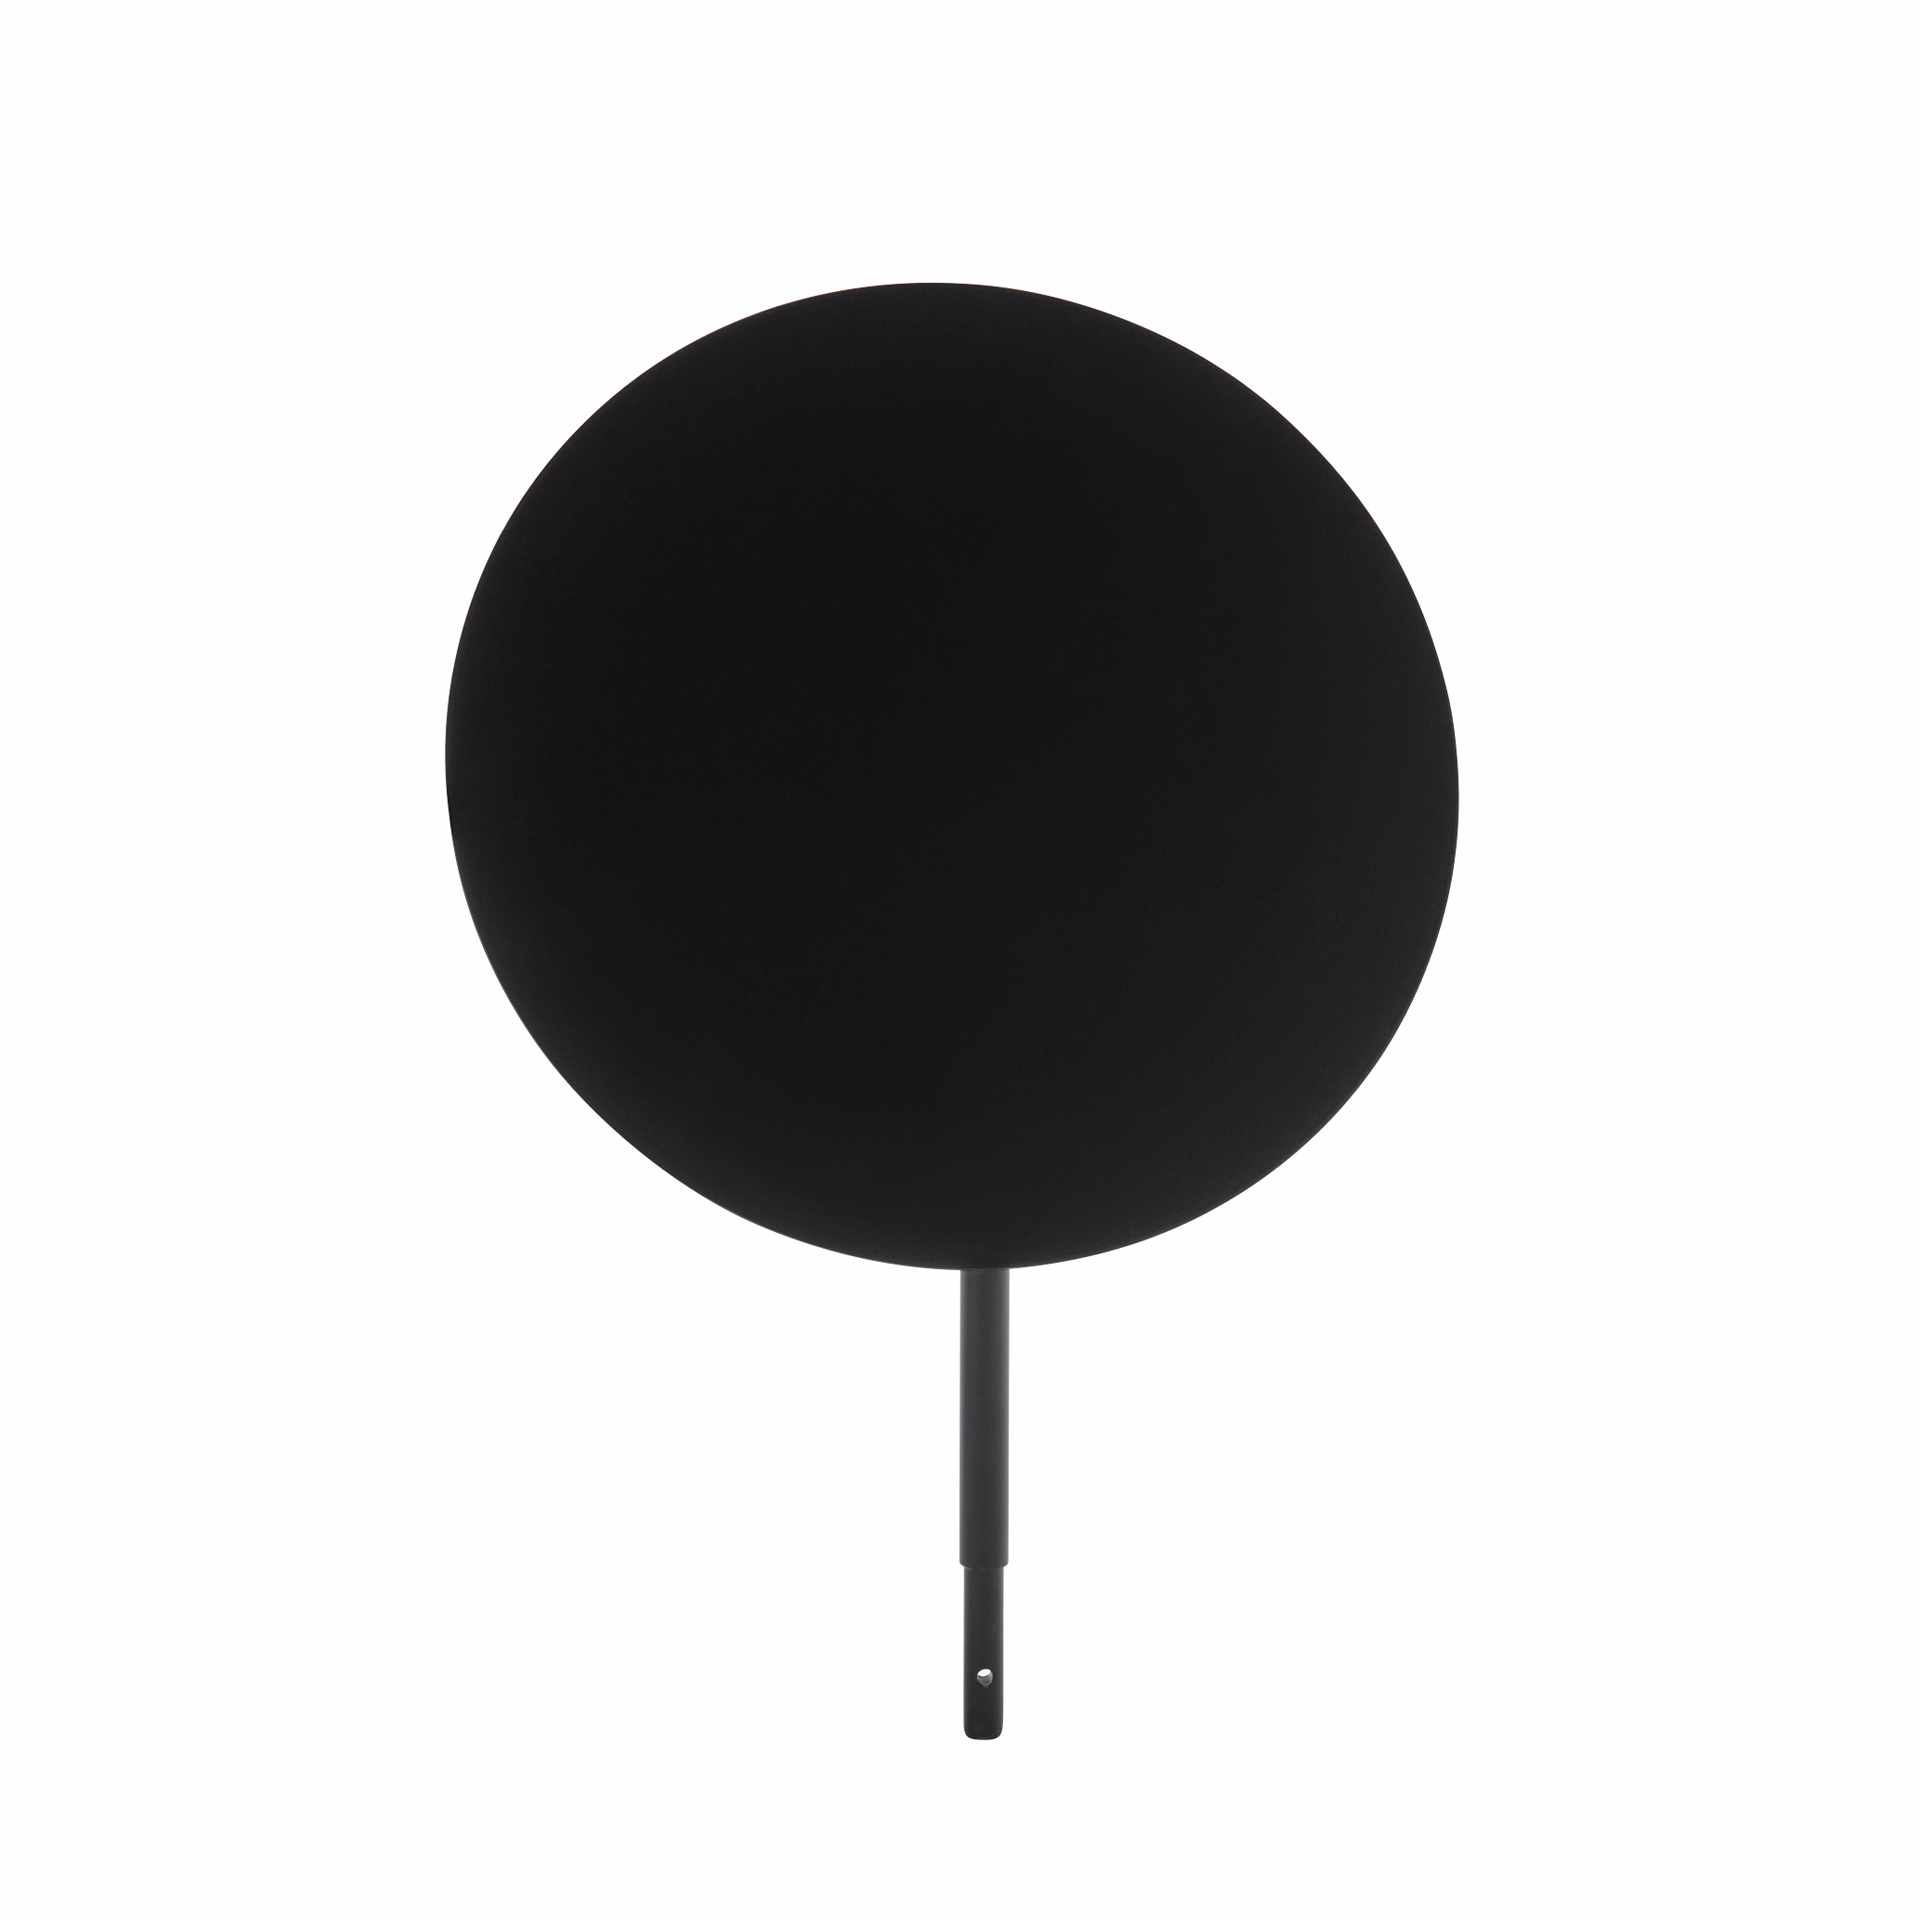 Schild - passend zu Artikel 14030-B - Serie Valo - schwarz - Höhe 33,0 cm - Ø 25 cm - Metall - 14034-B